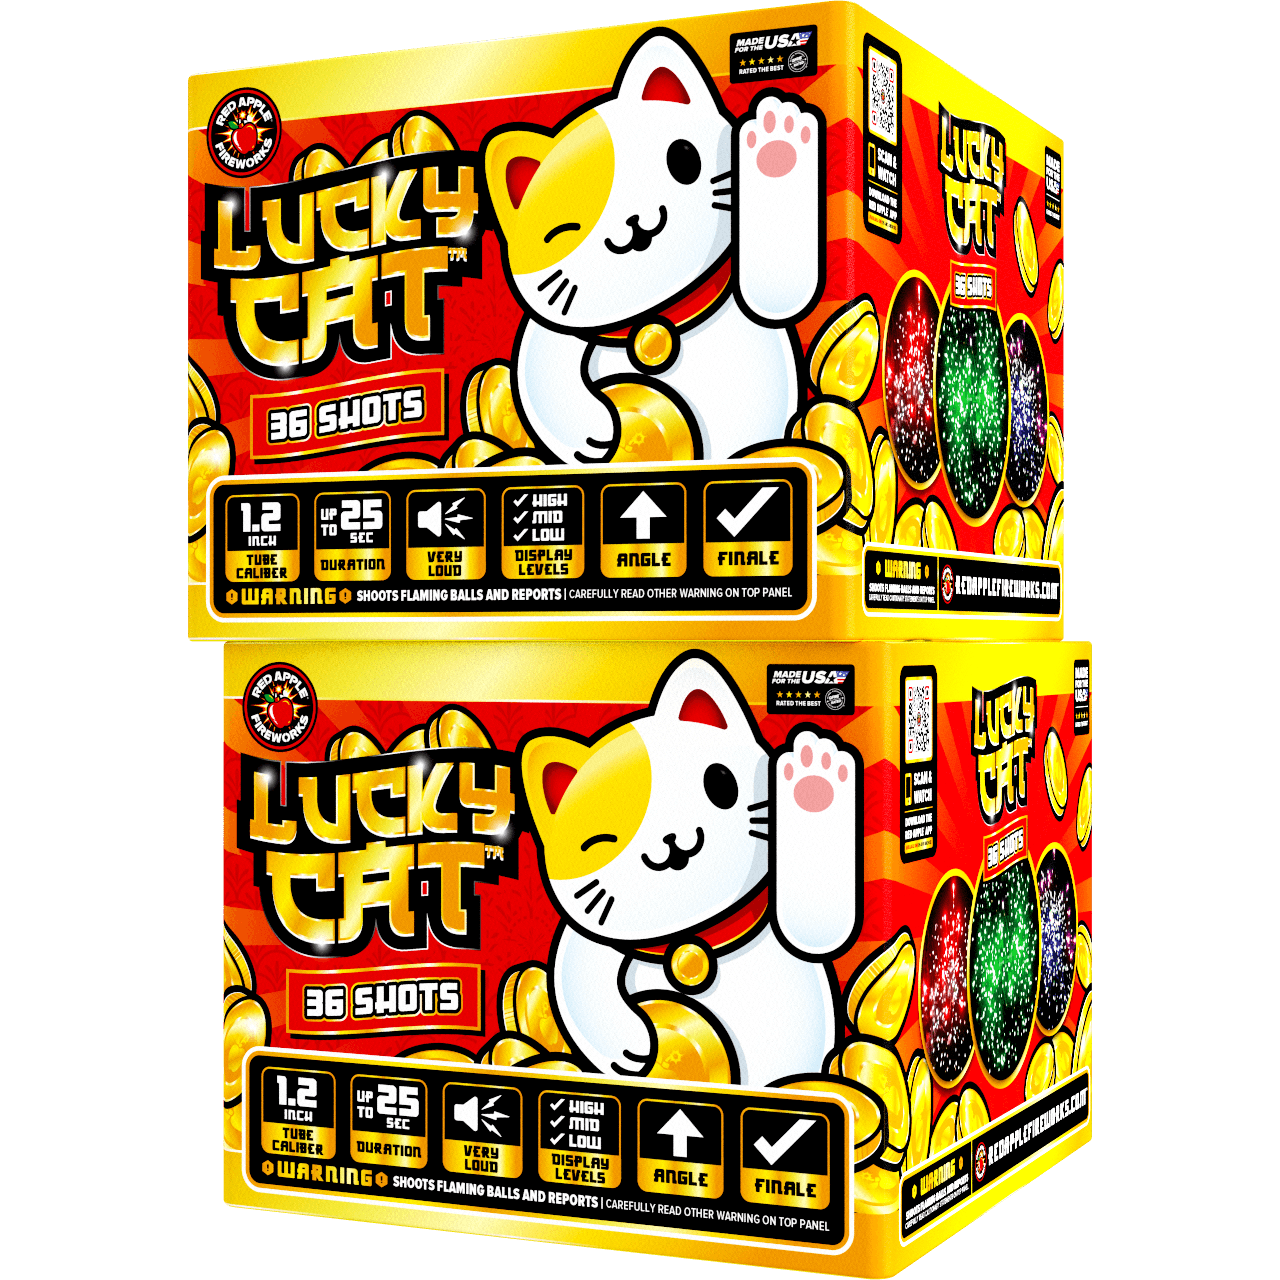 Lucky Cat™ 36-Shots XL® Aerials